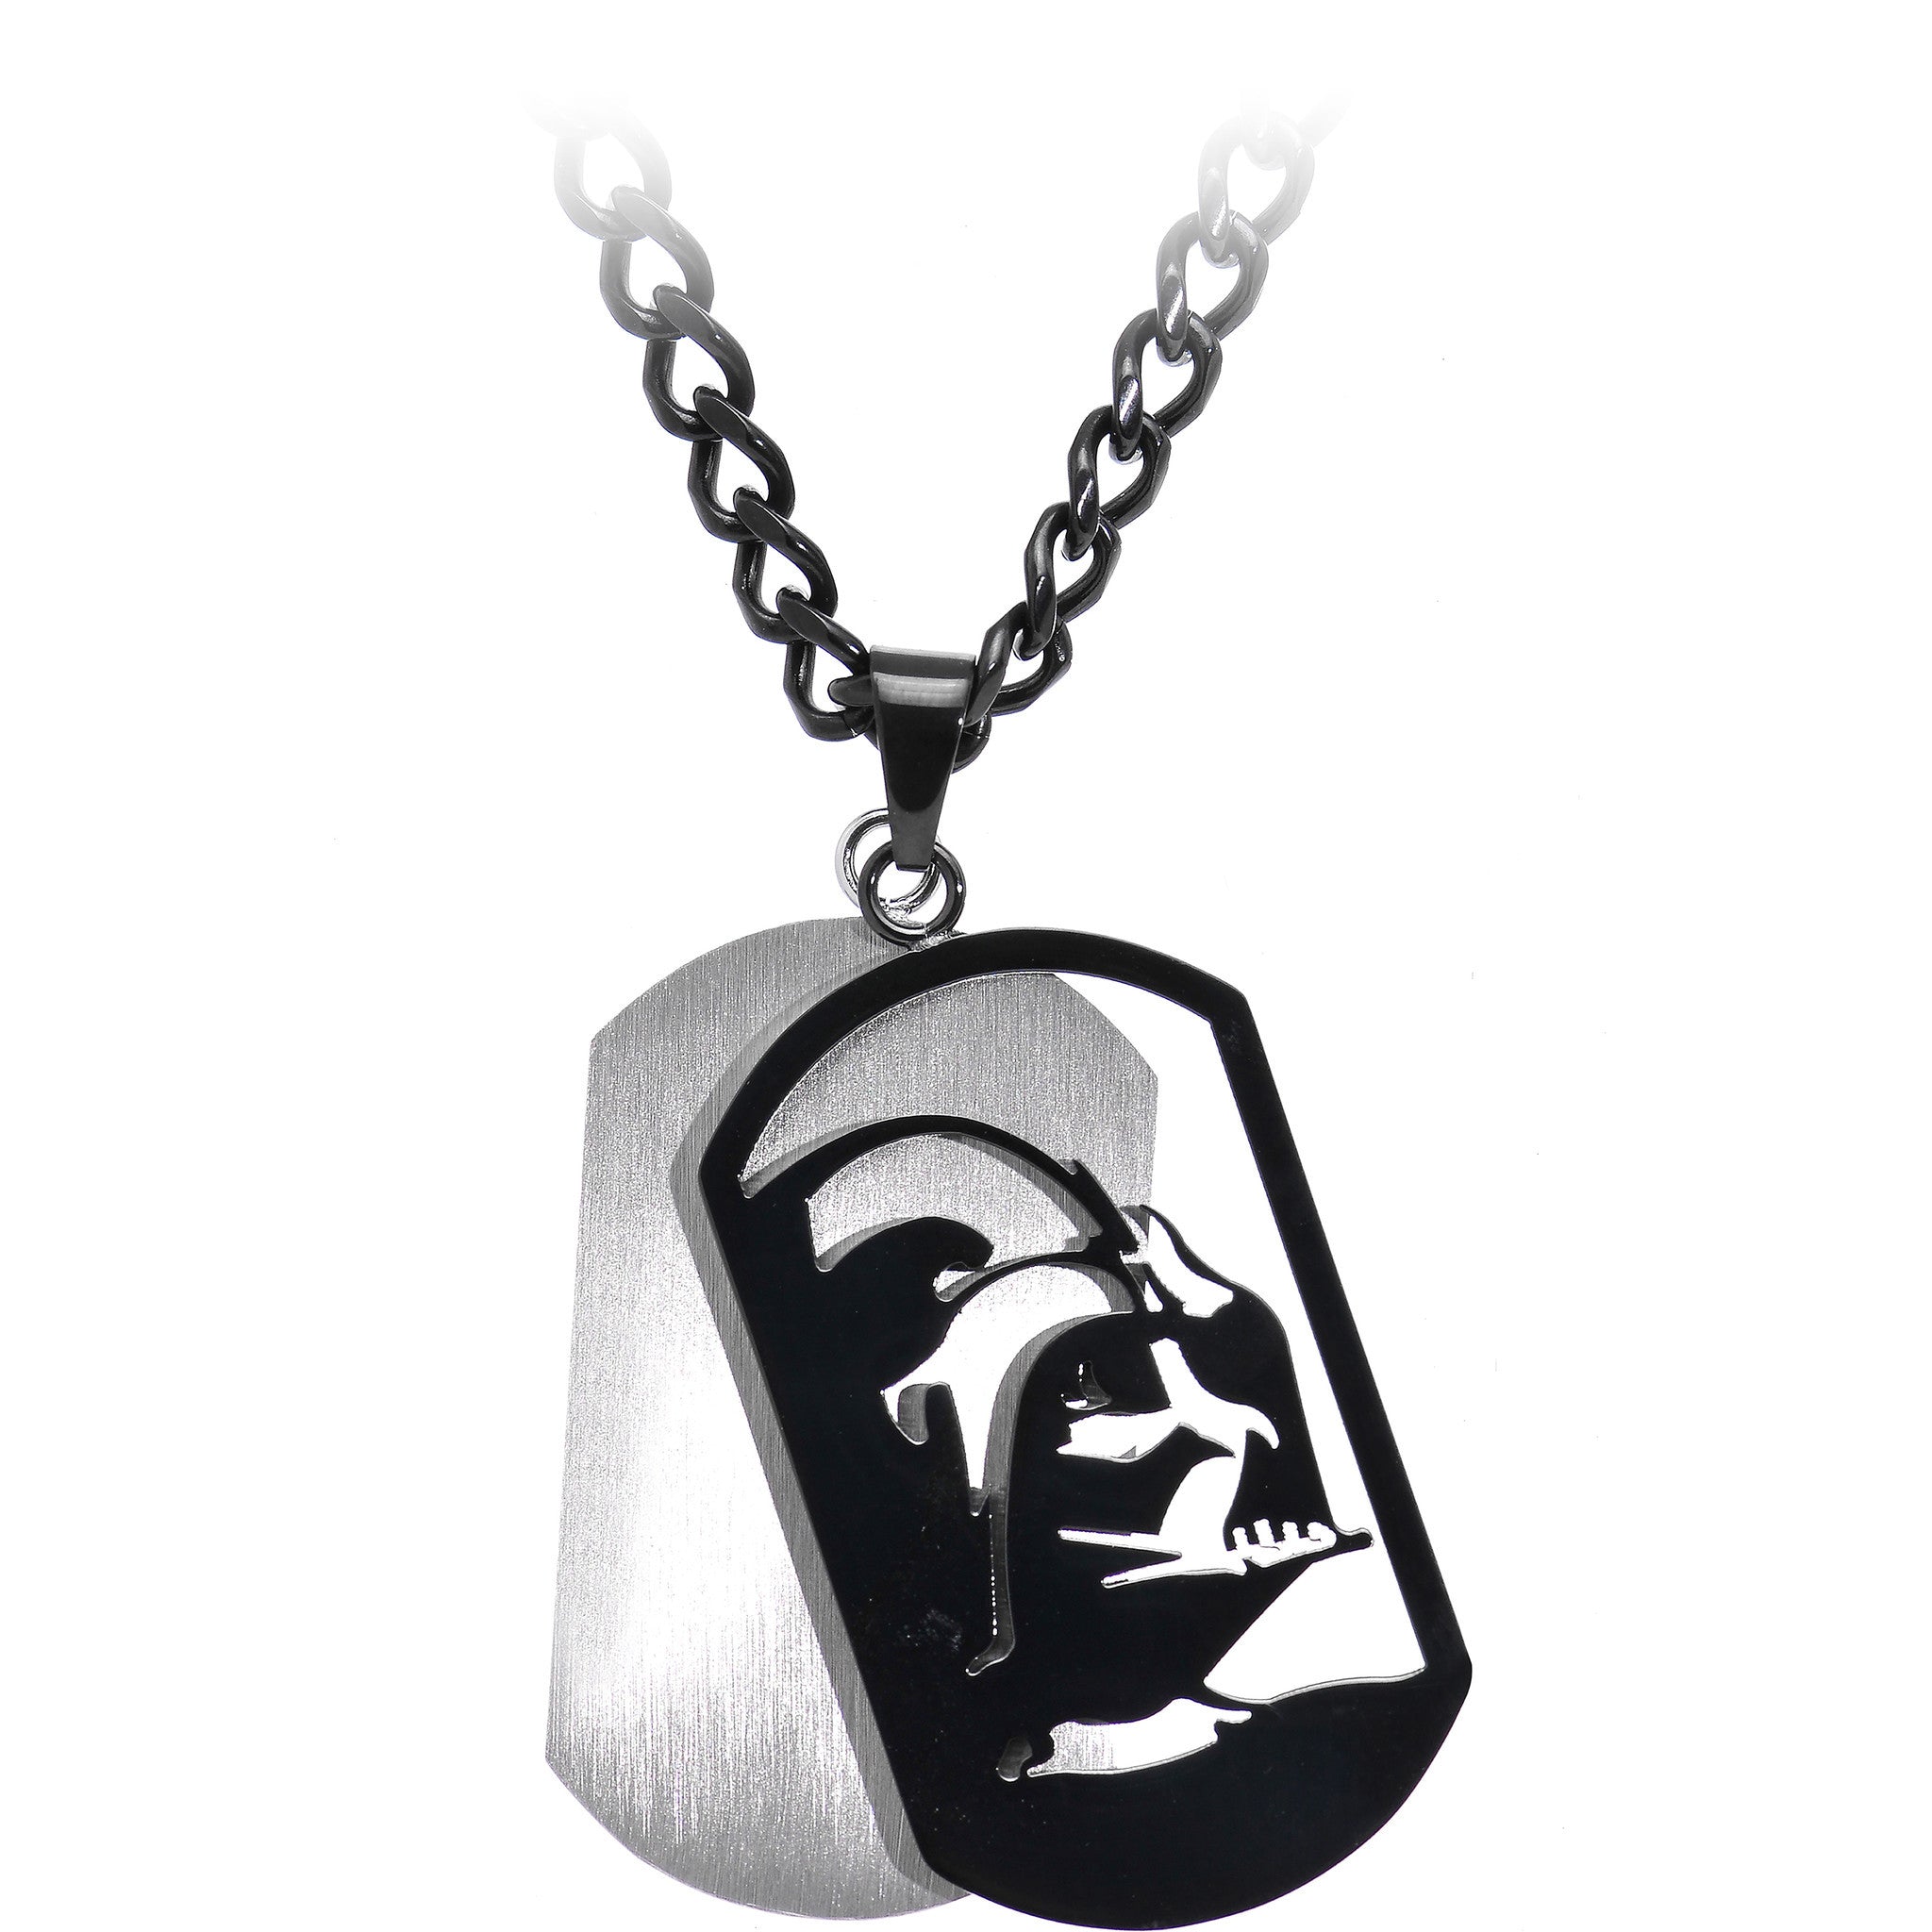 Licensed Black IP Star Wars Darth Vader Dog Tag Pendant Necklace